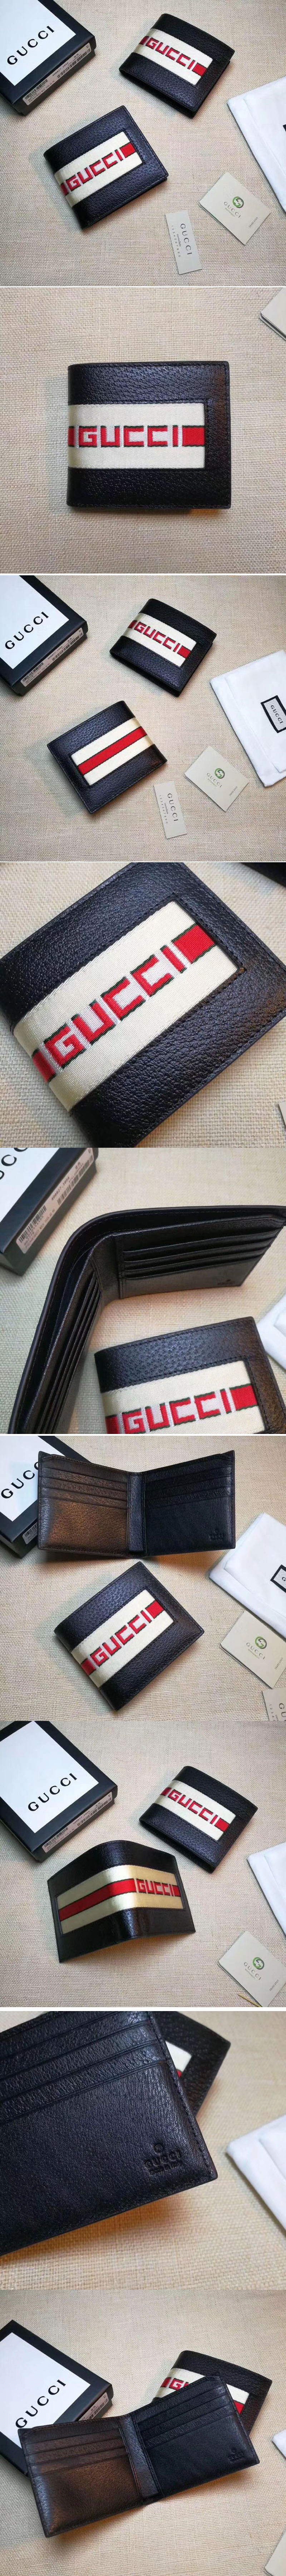 Replica Gucci 408827 Stripe leather wallet Black